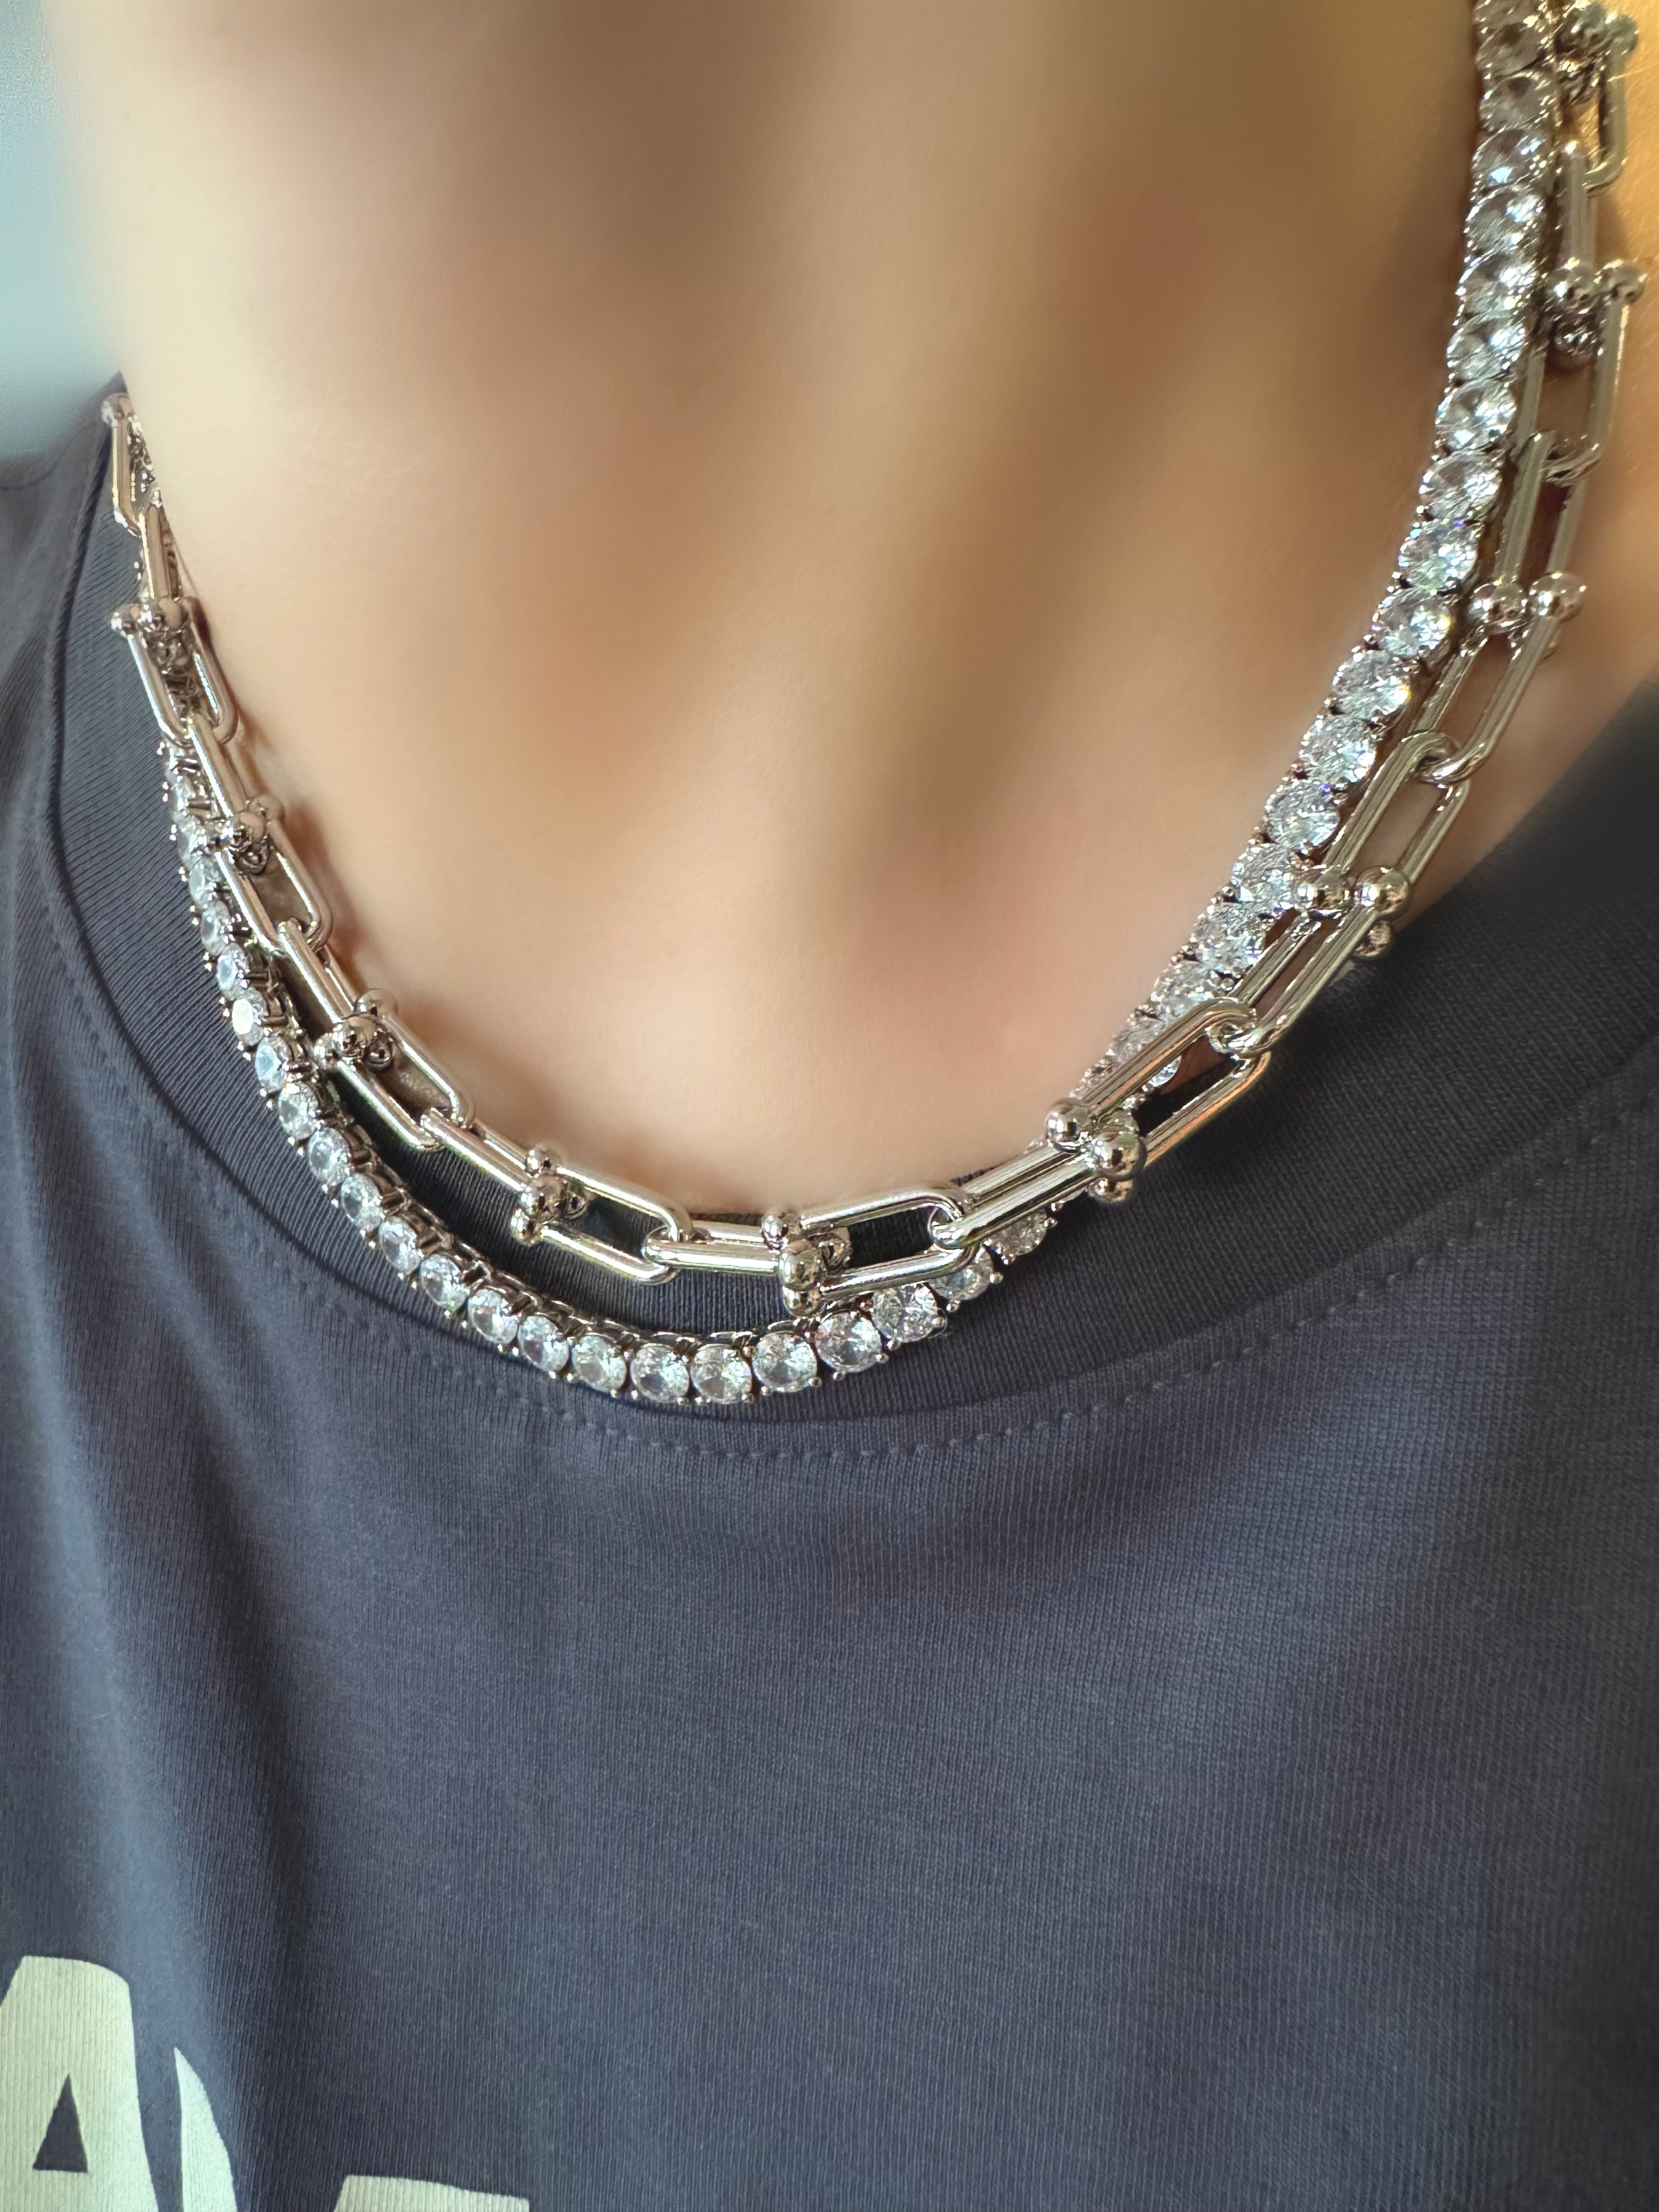 Cómo limpiar las joyas de plata y chapadas – SHATÓ Jewelry